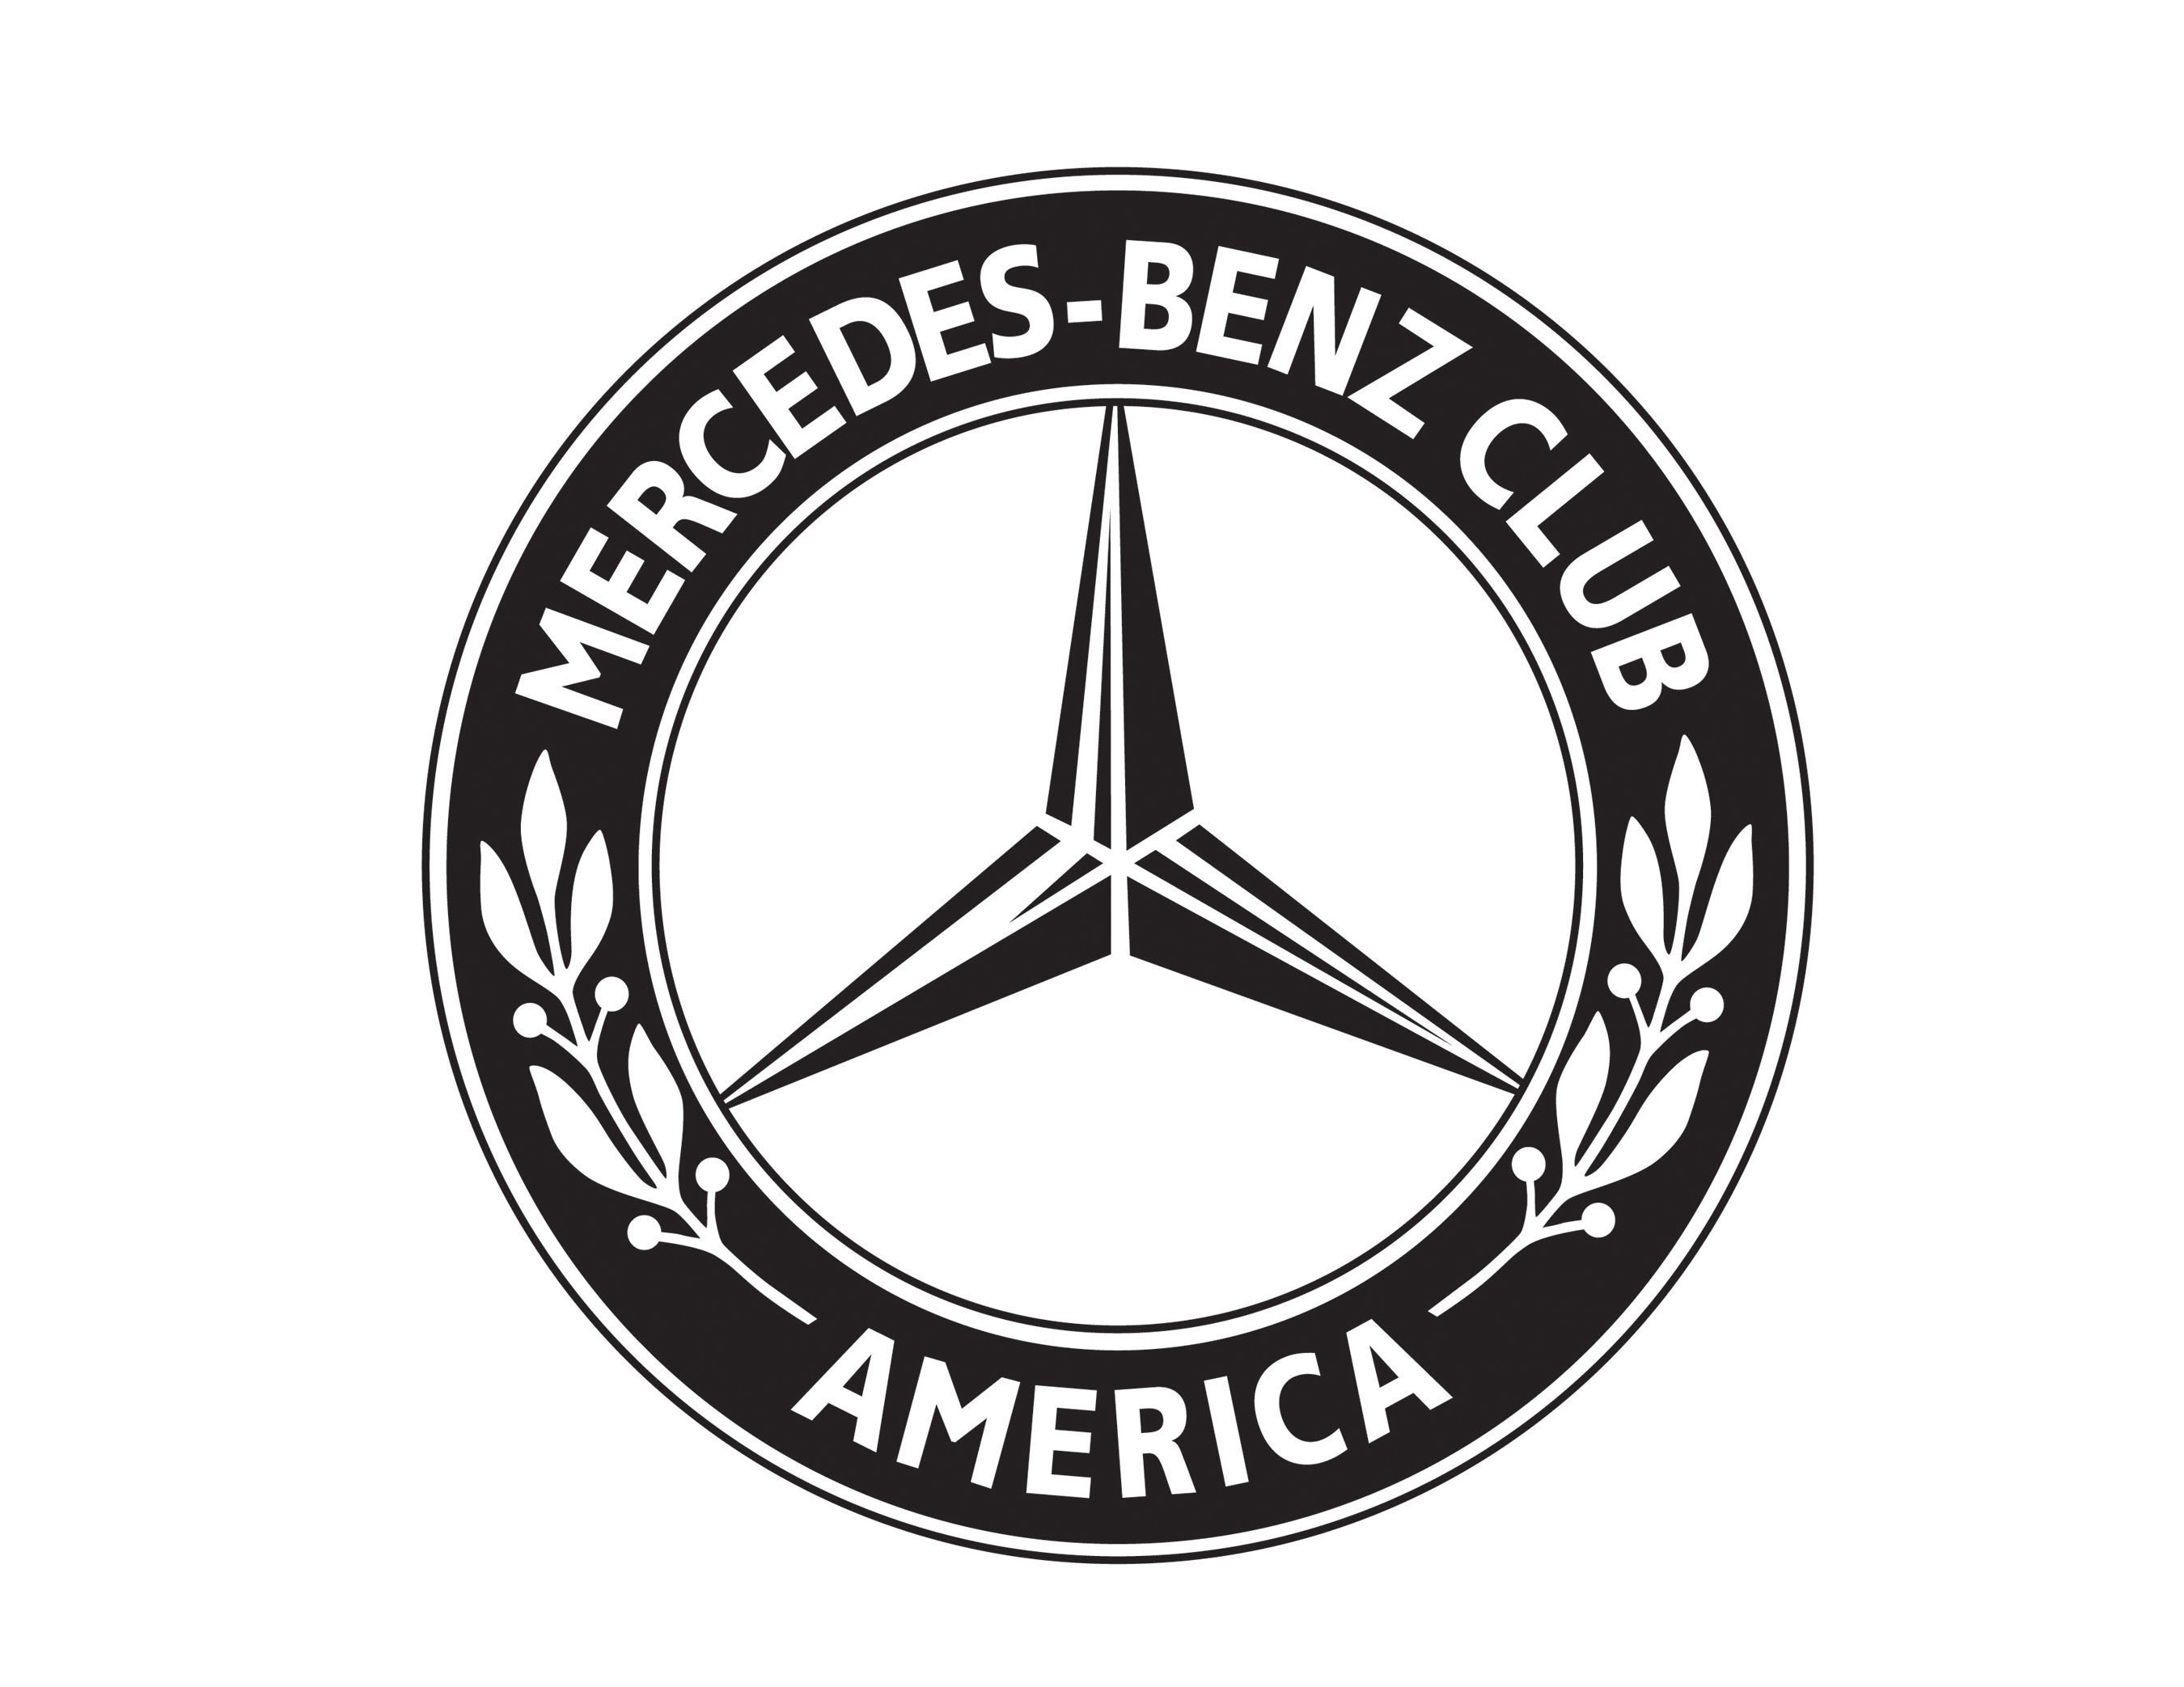 Mercedes-Benz Club of America logo. (PRNewsFoto/Mercedes-Benz Club of America) (PRNewsFoto/)